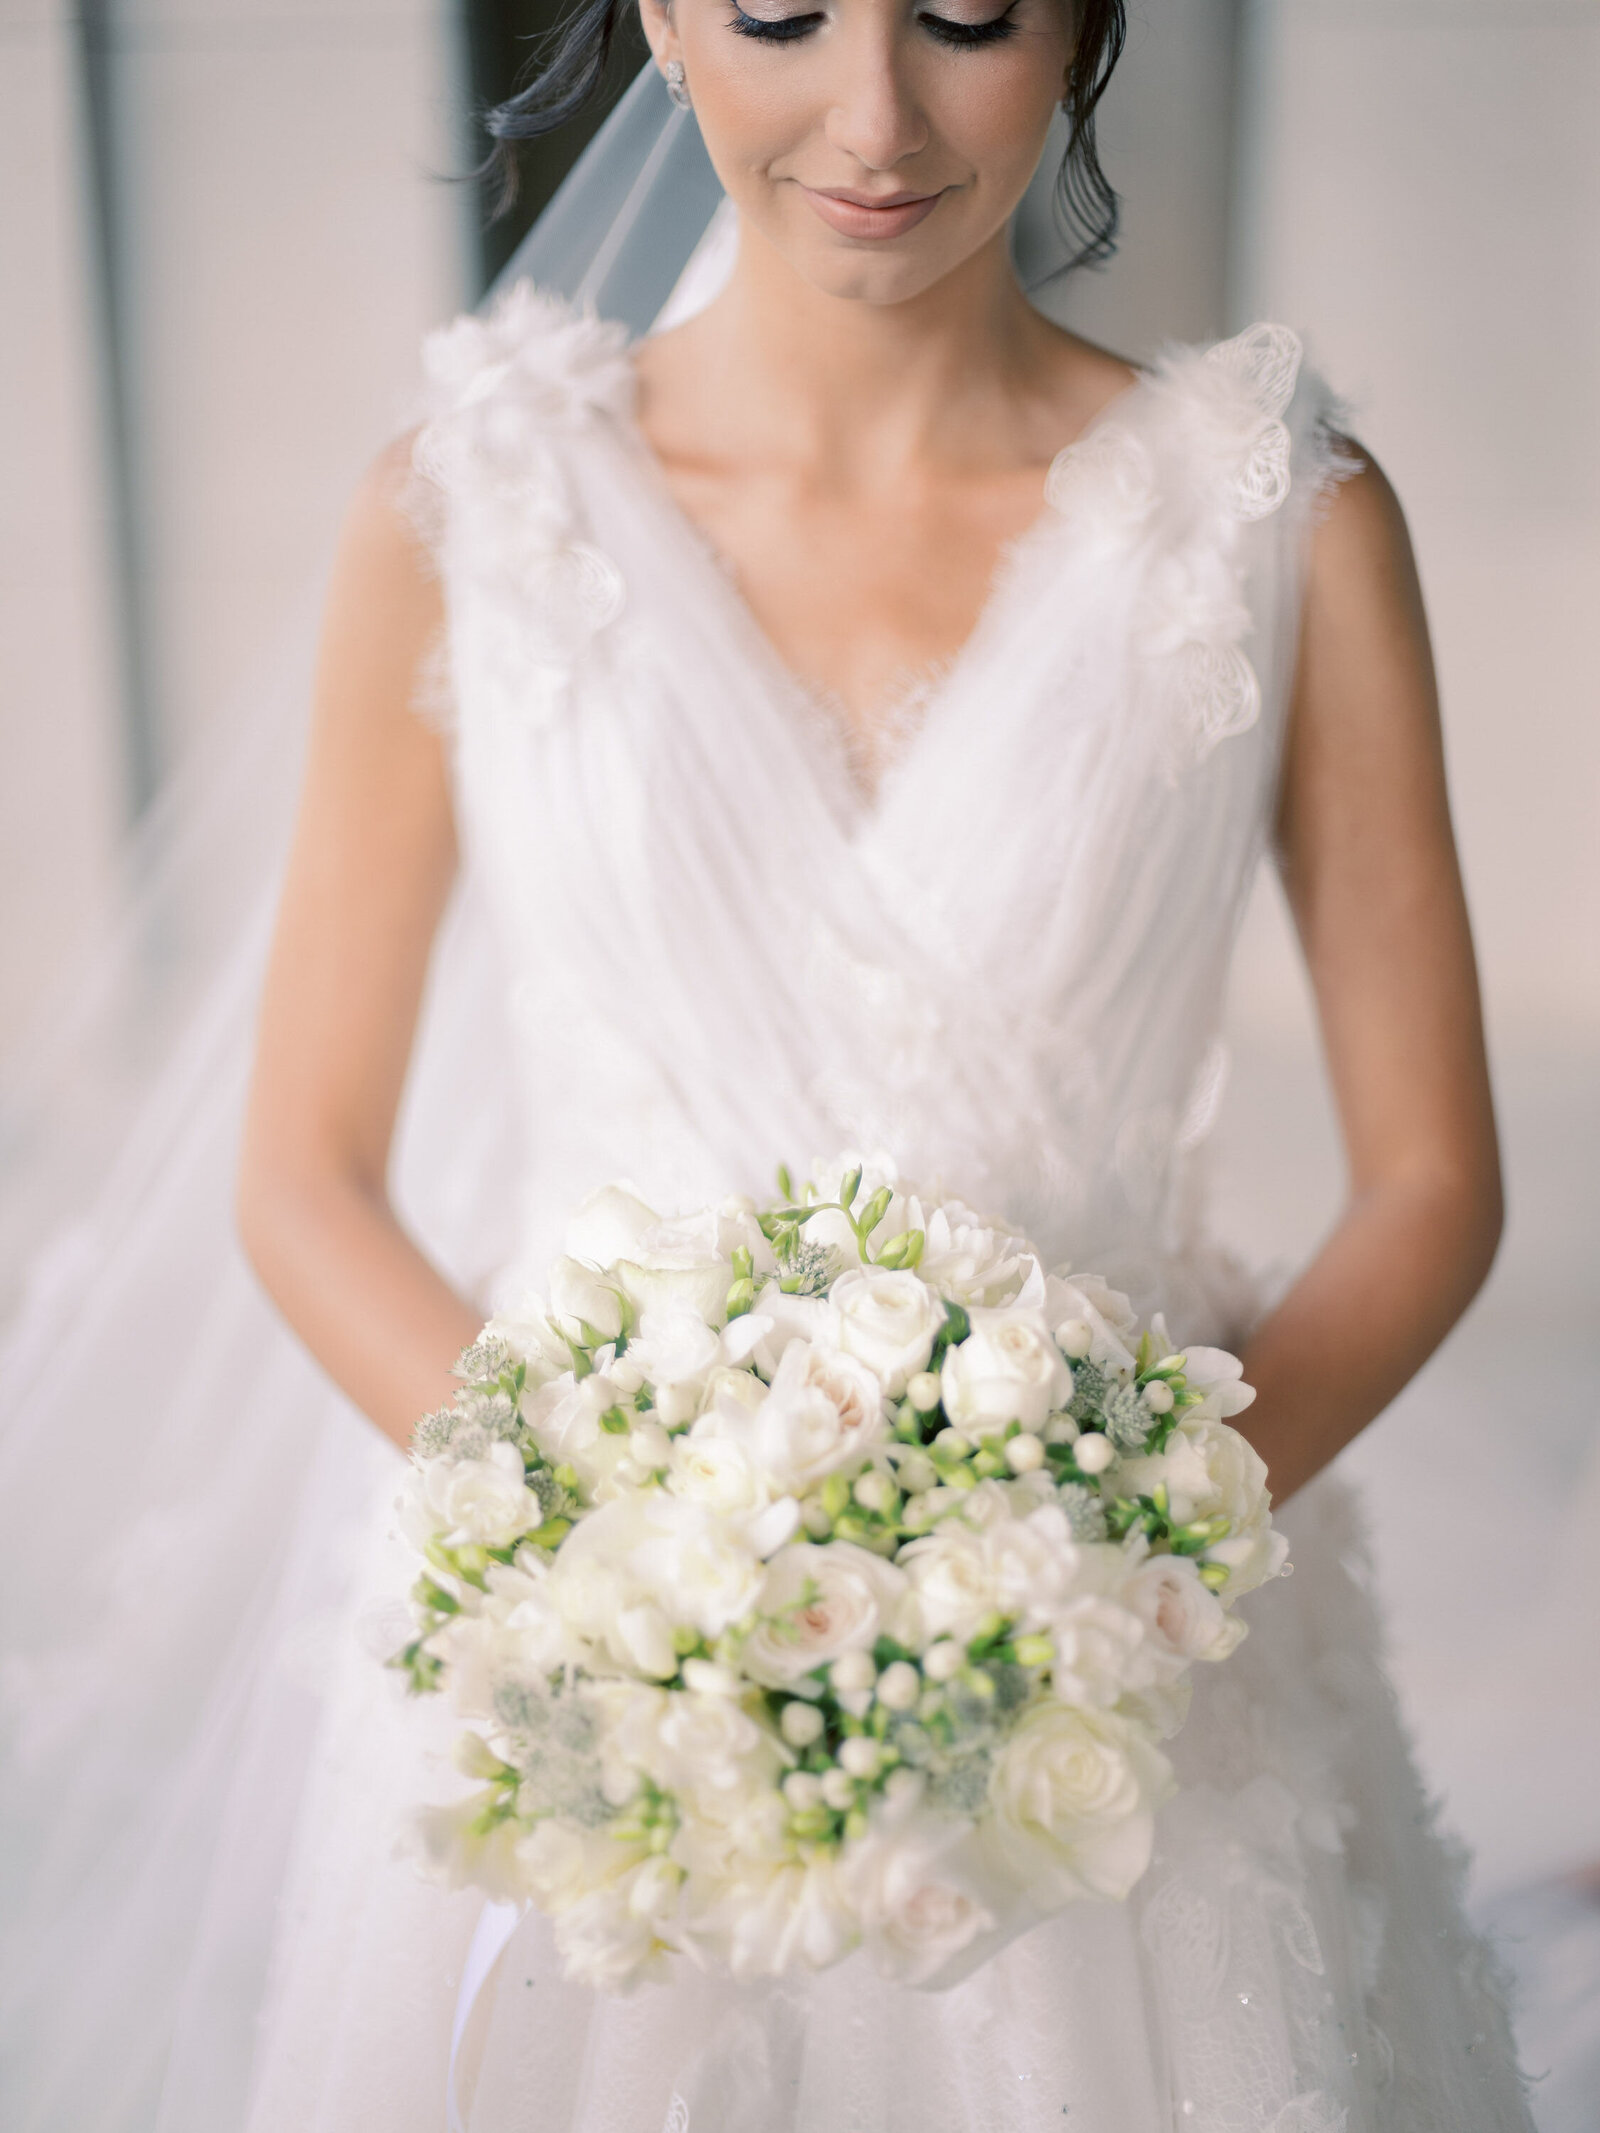 lefkara-dafermou-wedding-cyprus-wedding-planner-lebanese071-